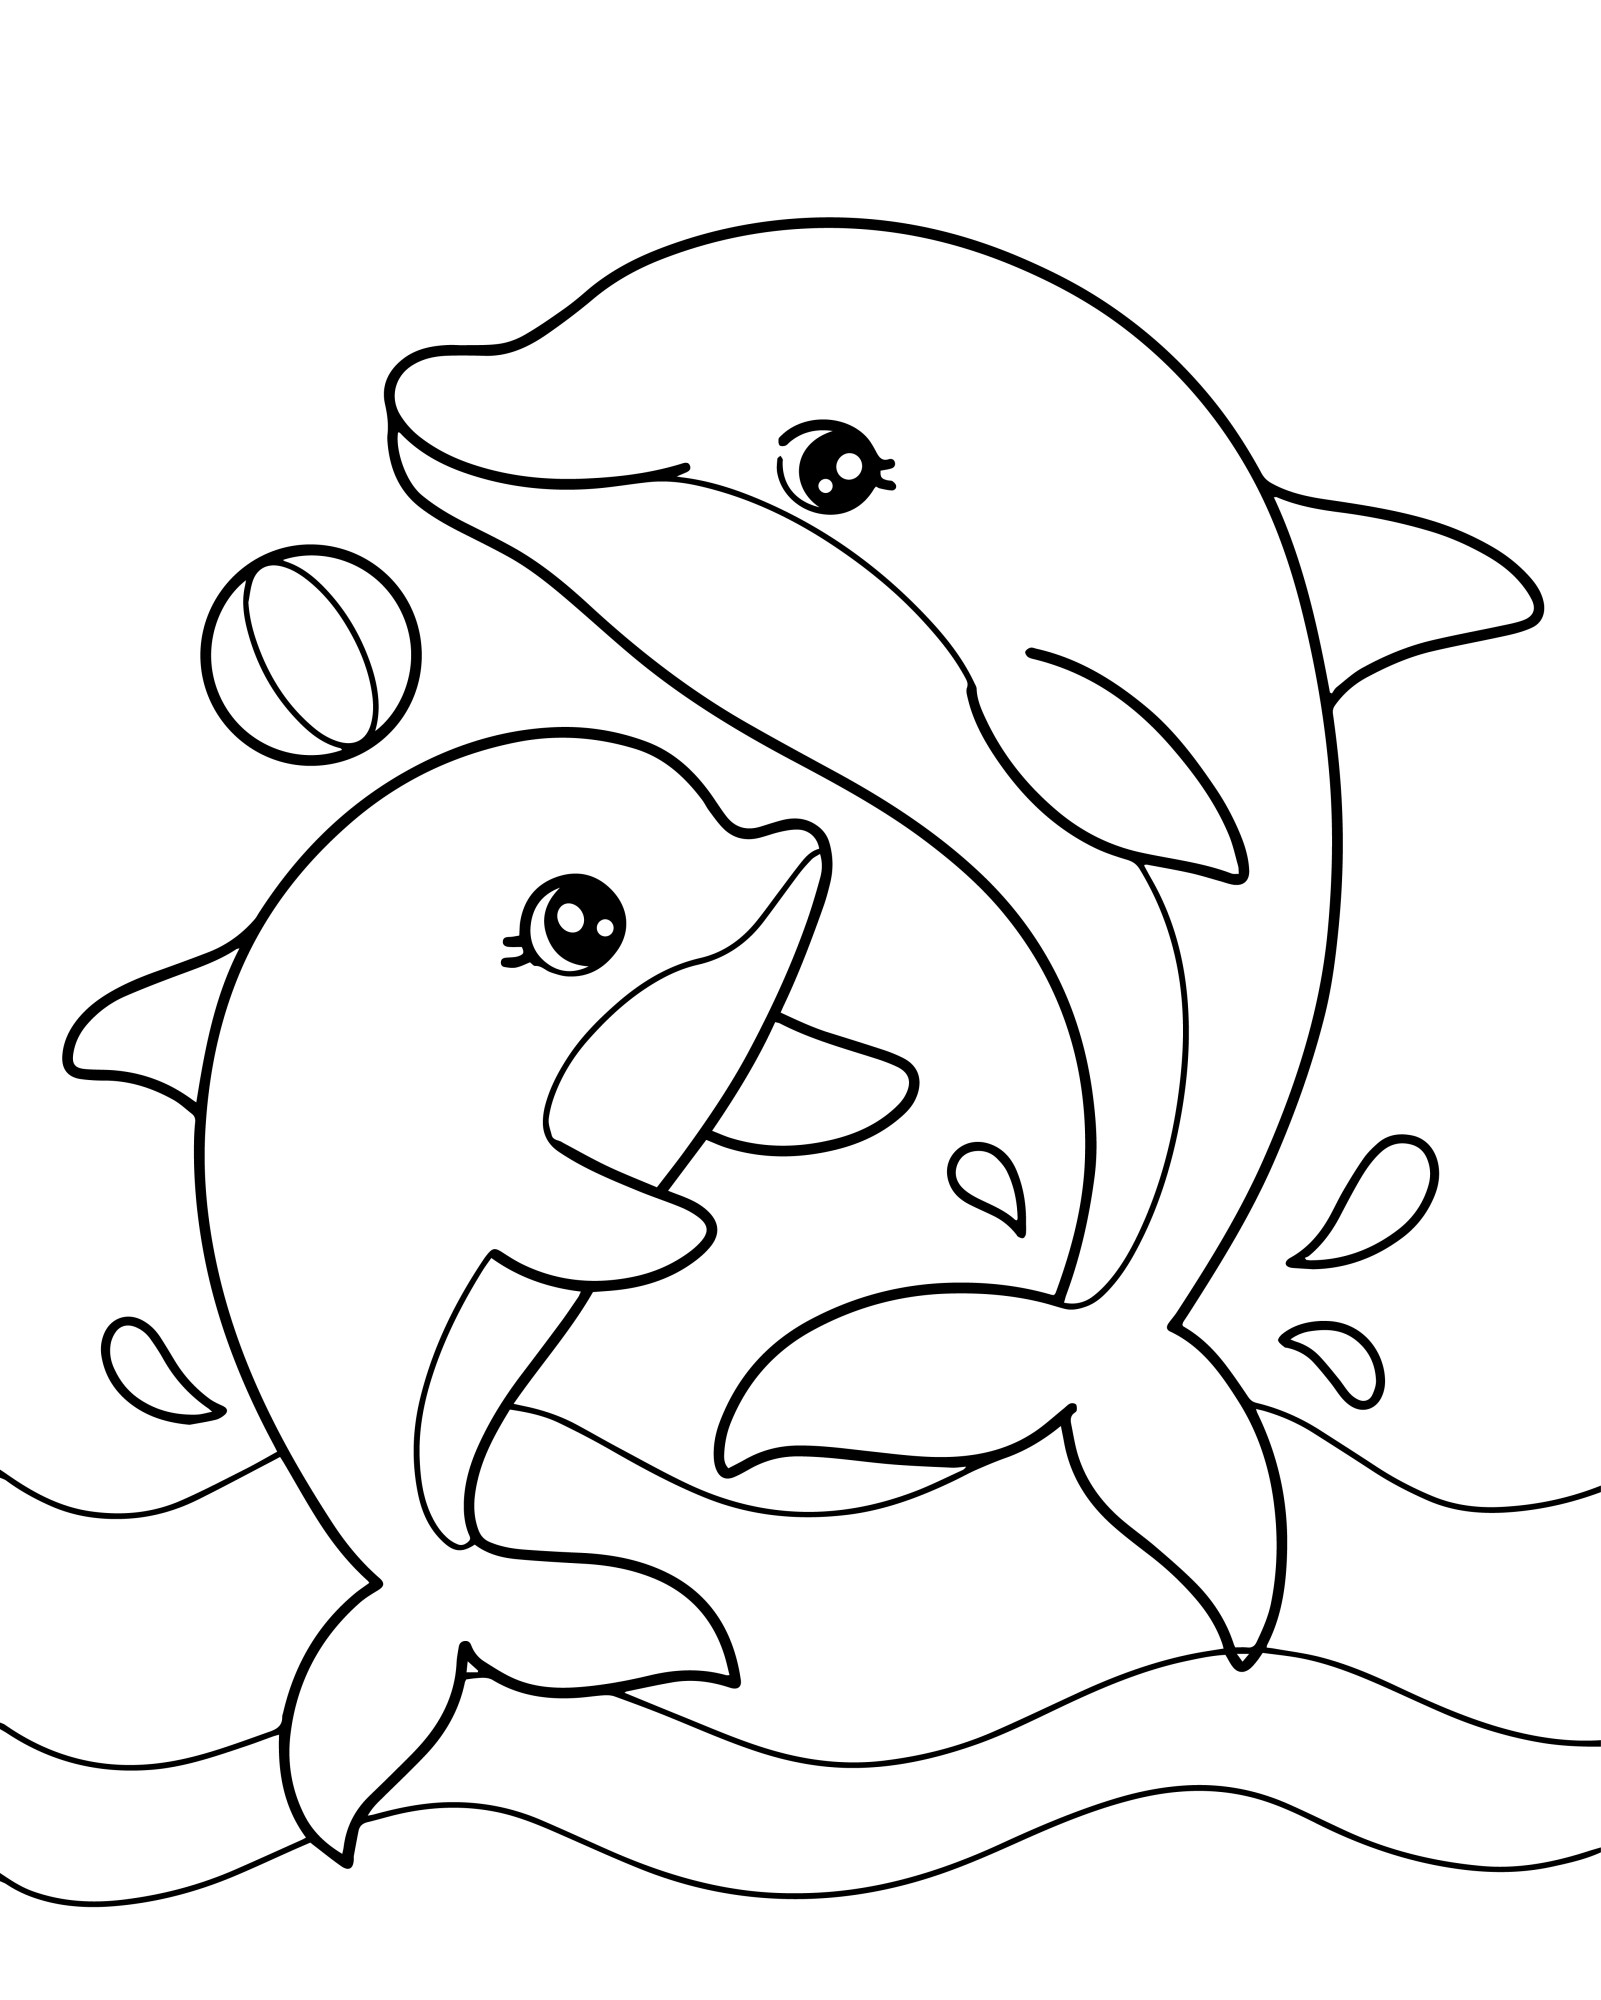 Раскраска для детей: дельфин играет с мамой в мячик